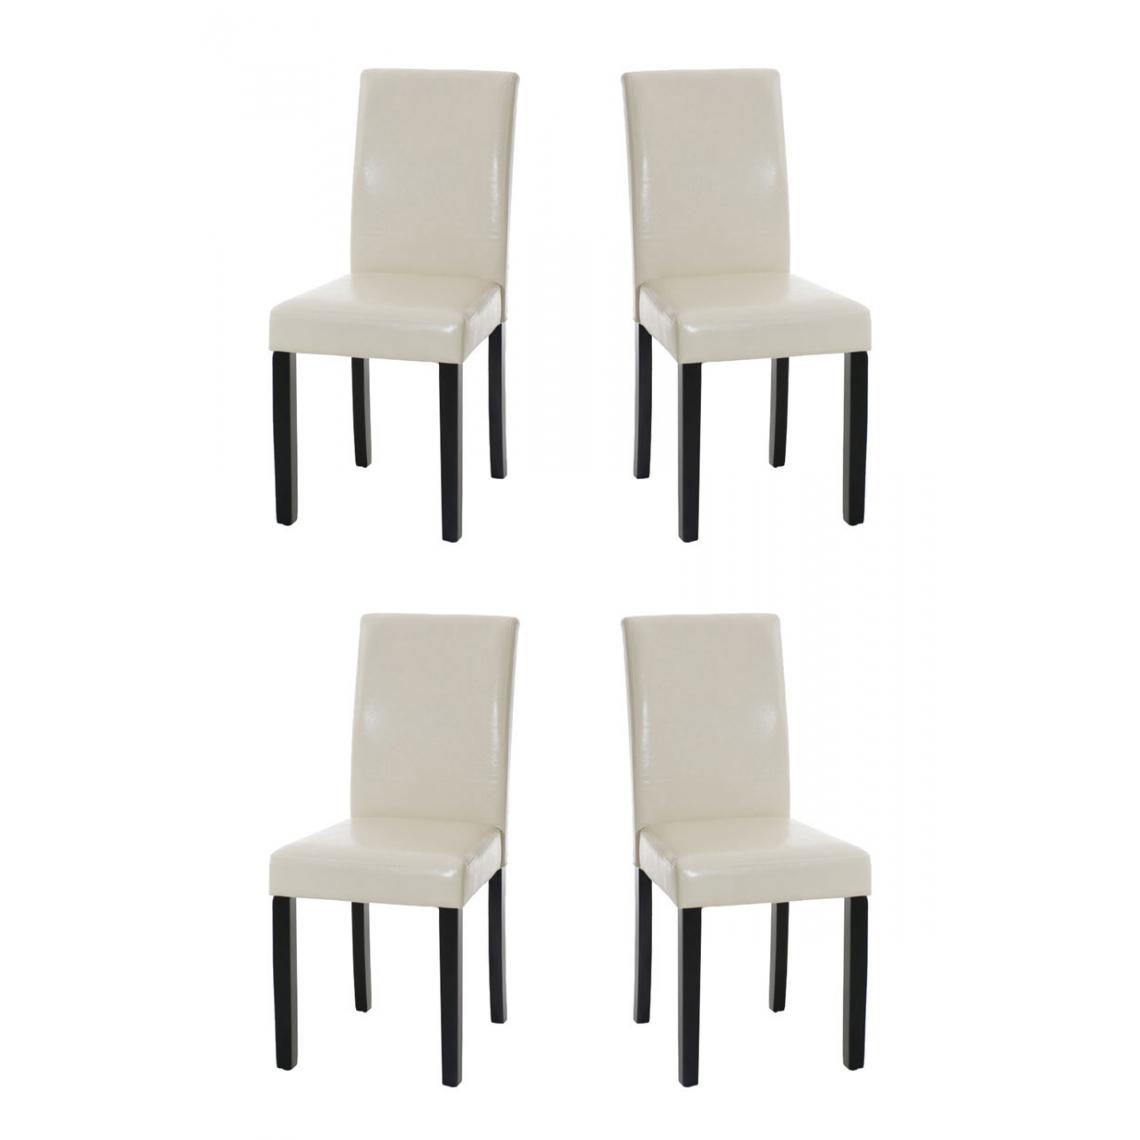 Icaverne - Admirable Lot de 4 chaises de salle à manger ligne Rabat noir couleur crème - Chaises